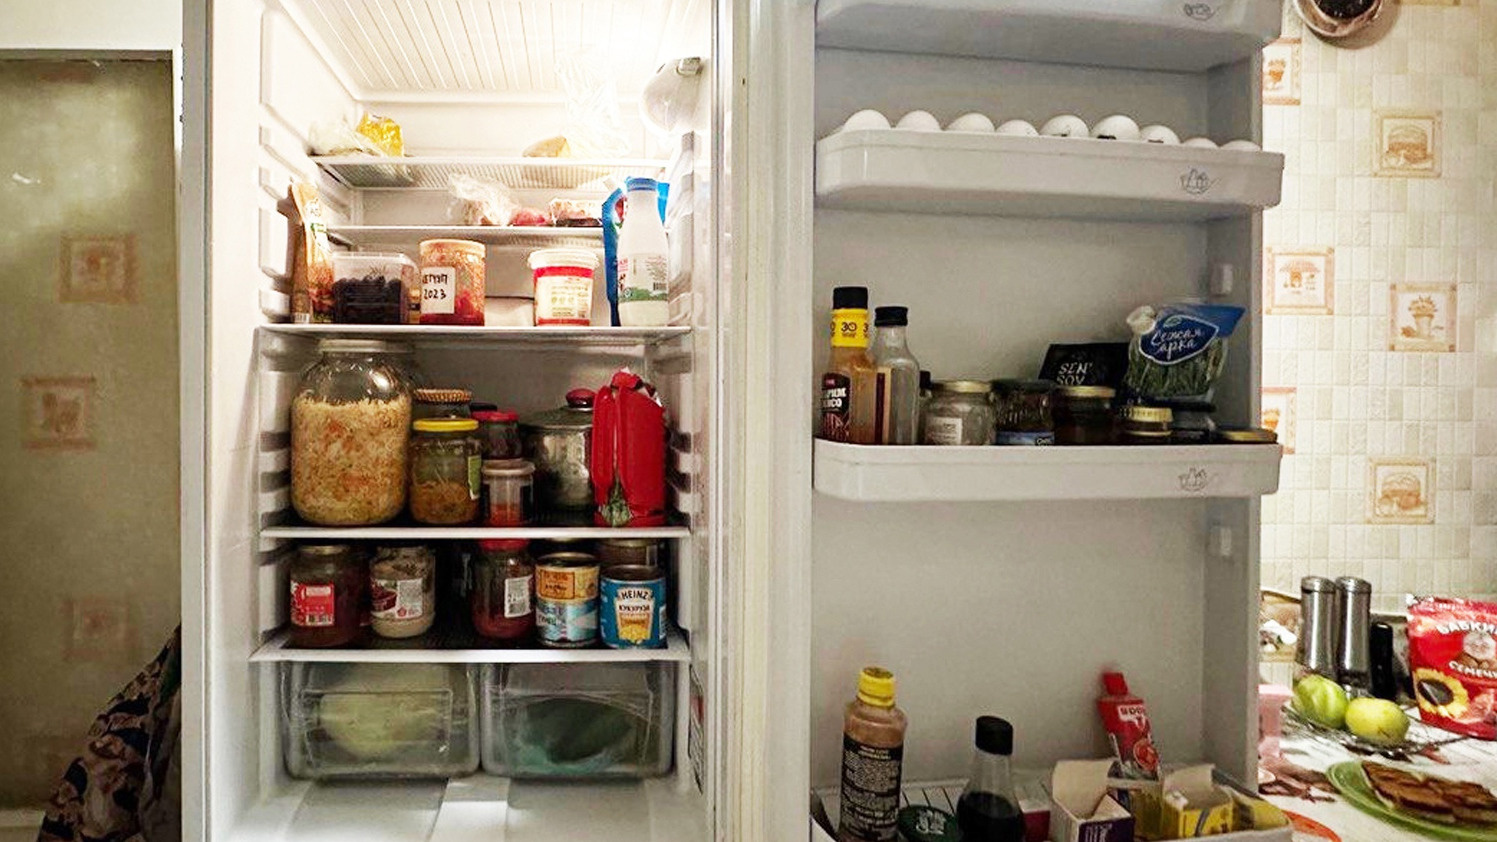 Морозят молоко, хранят чеснок в масле и лакомятся икрой: разглядываем холодильники тюменских пенсионеров